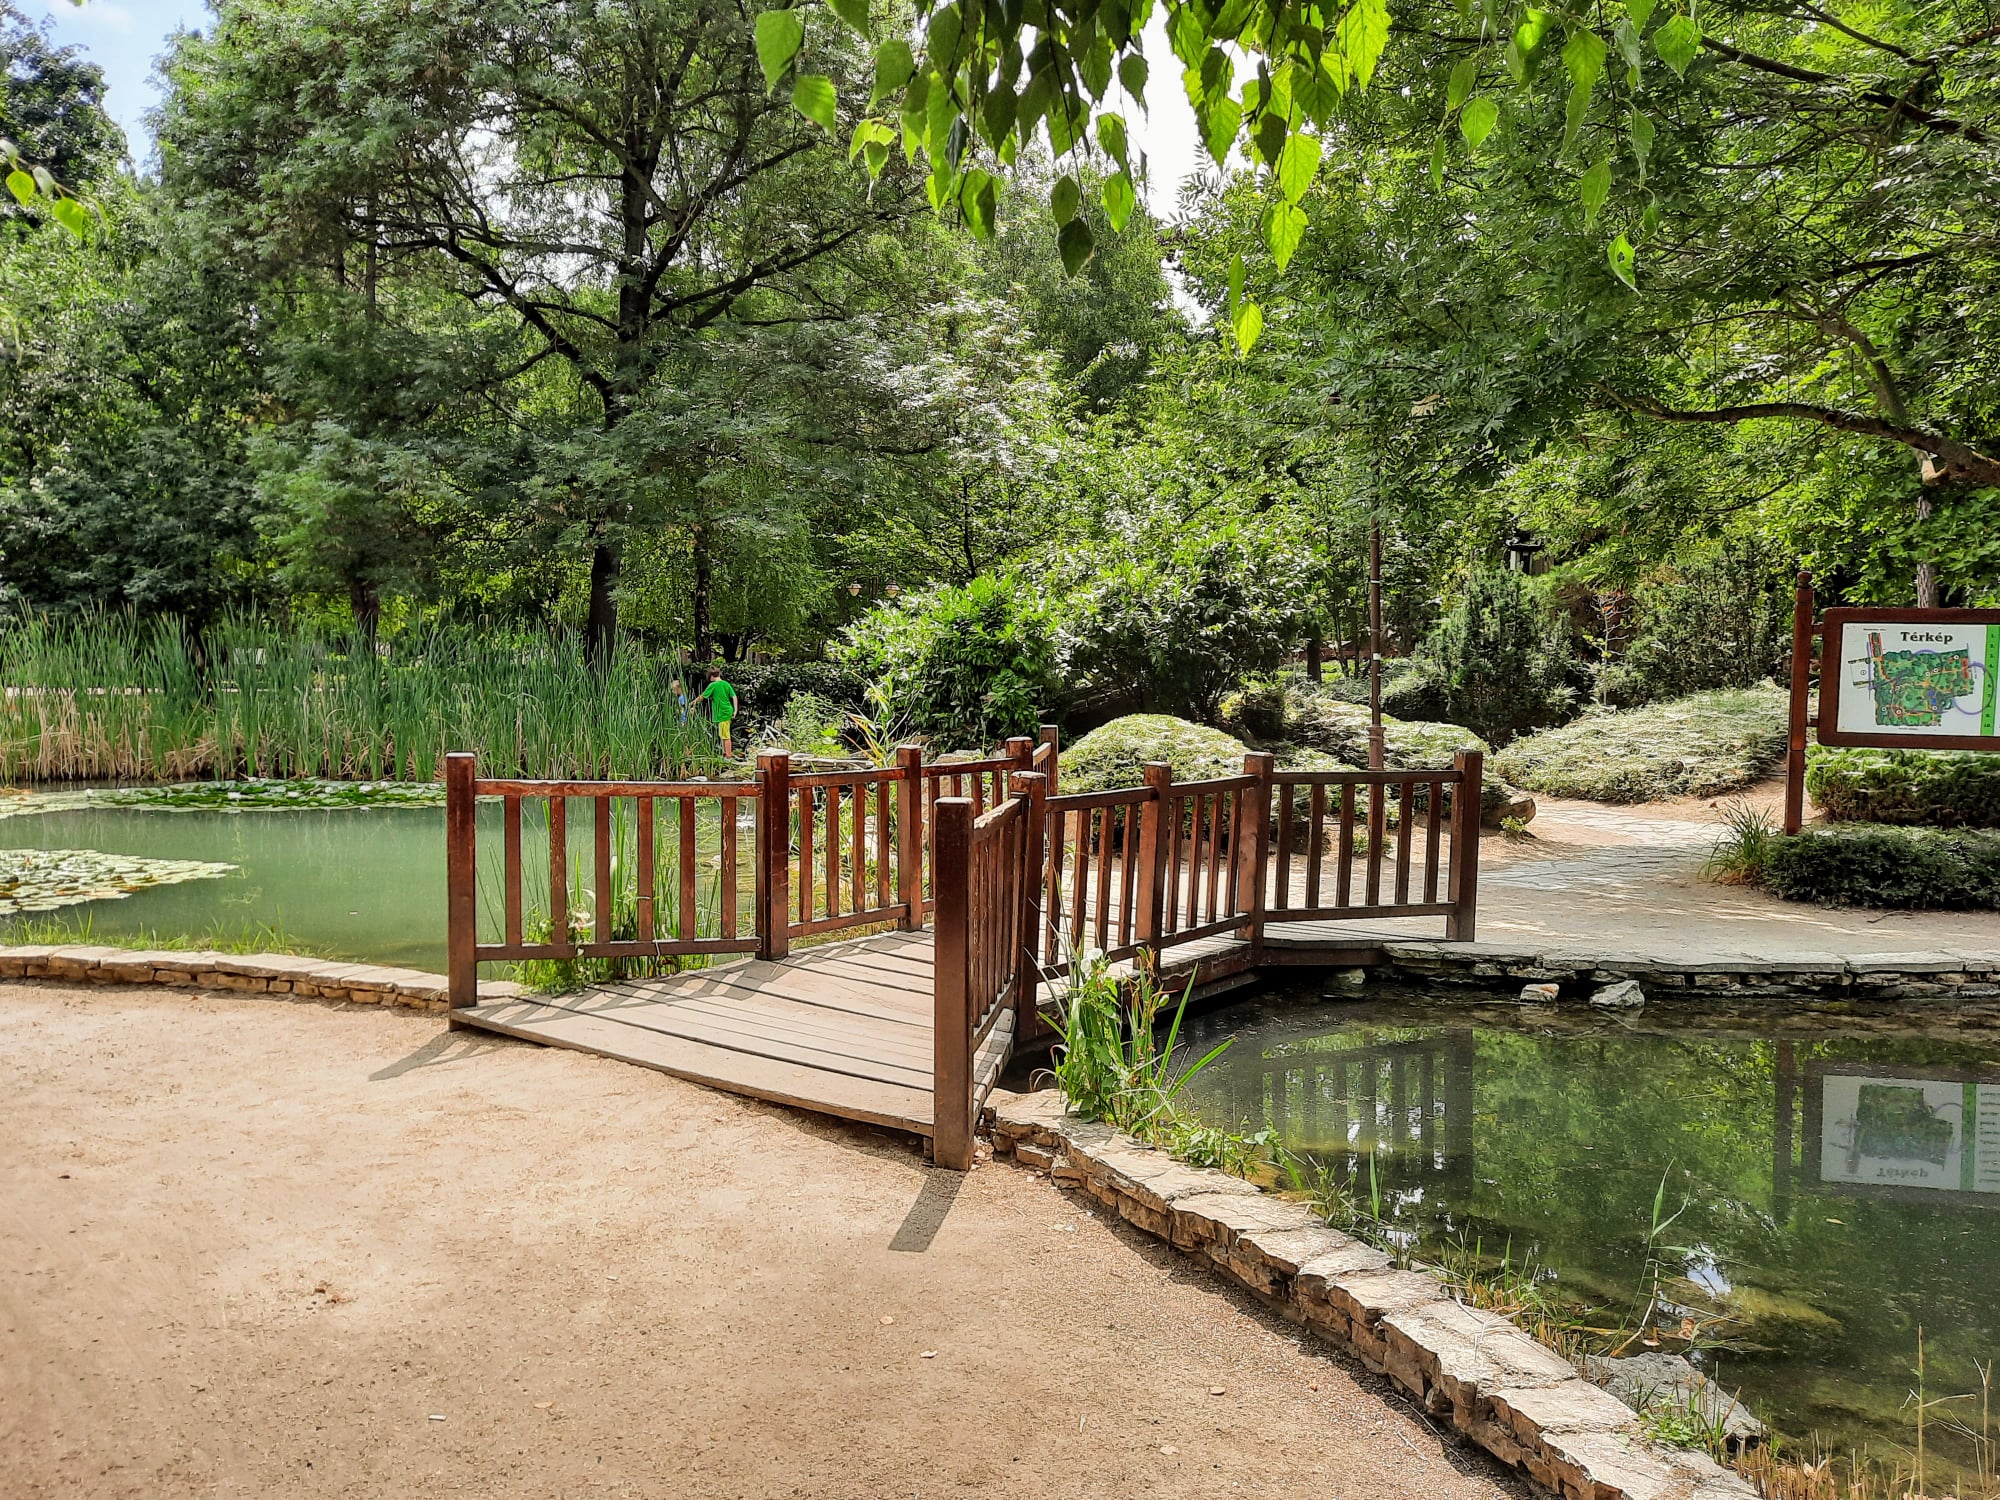 Hangulatos japánkert bújik meg a Balaton egyik közkedvelt üdülőparadicsomában